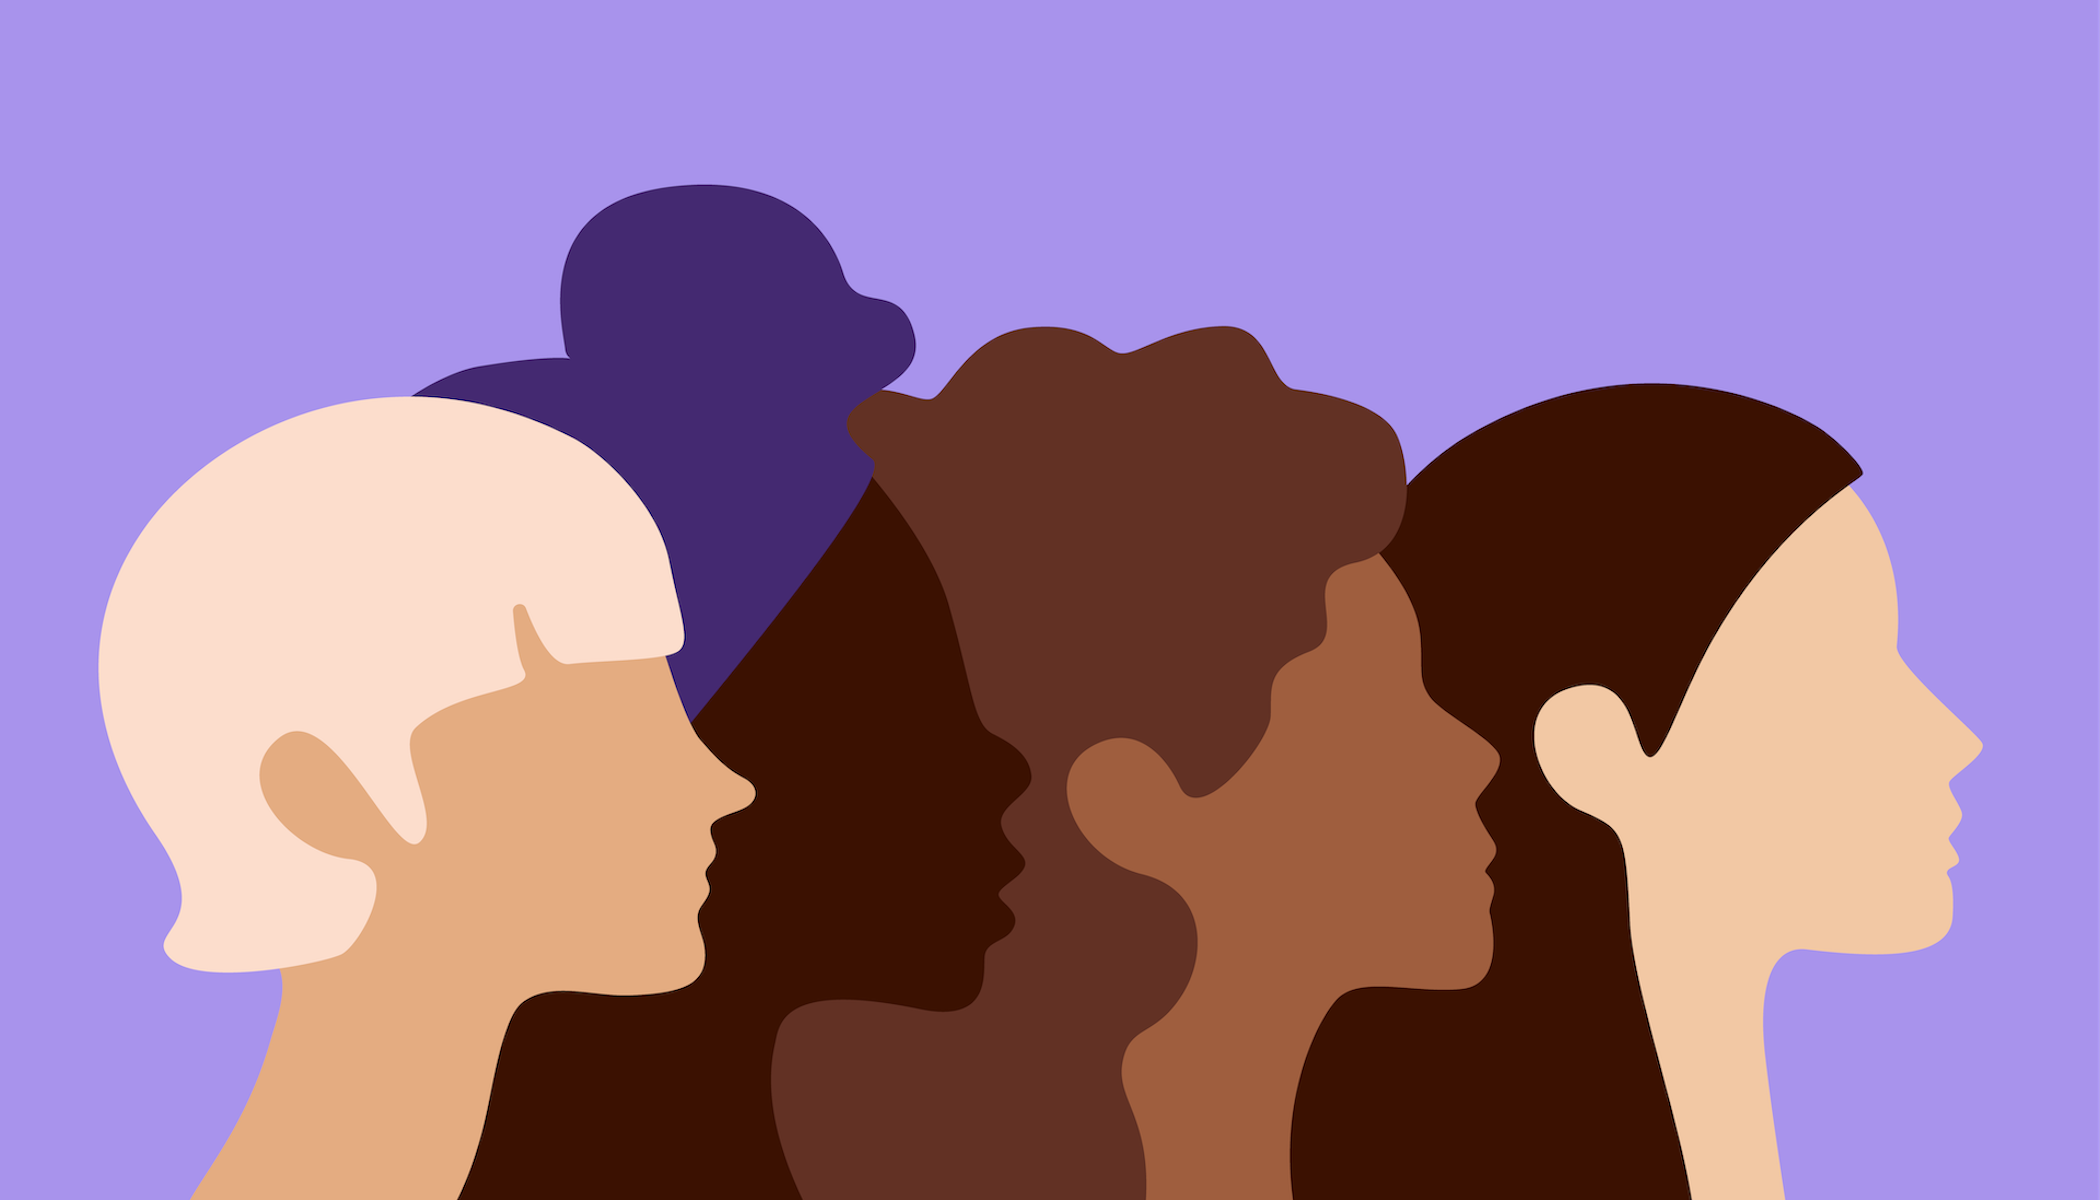 illustration-kvinnoansikten-i-profil-olika-färger